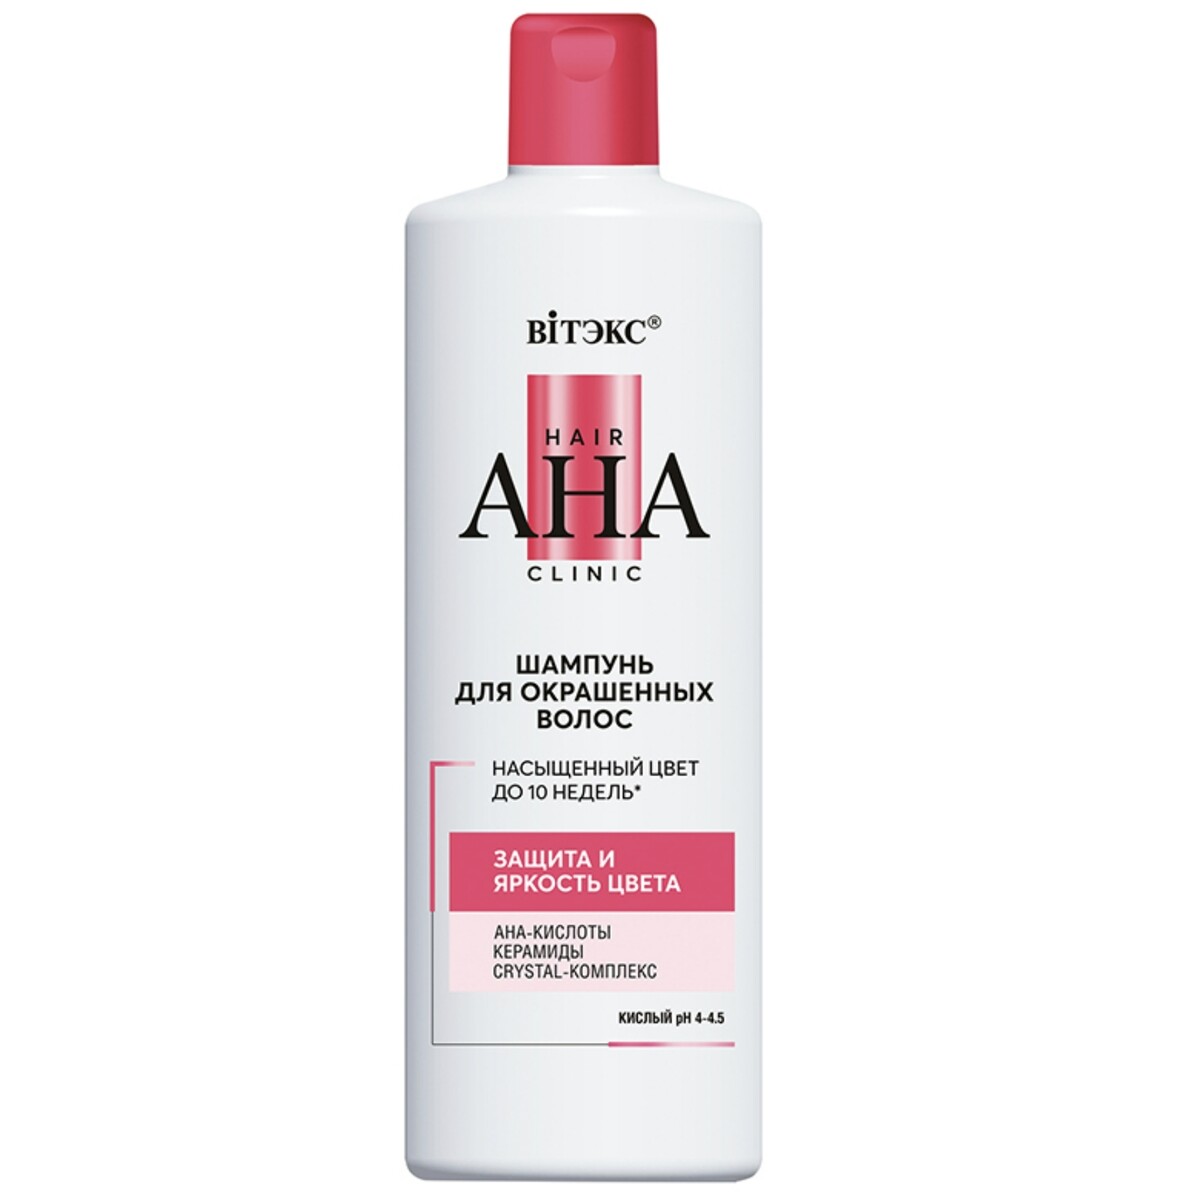 Hair aha clinic шампунь для окрашенных волос защита и яркость цвета 450мл шампунь для окрашенных волос 250мл